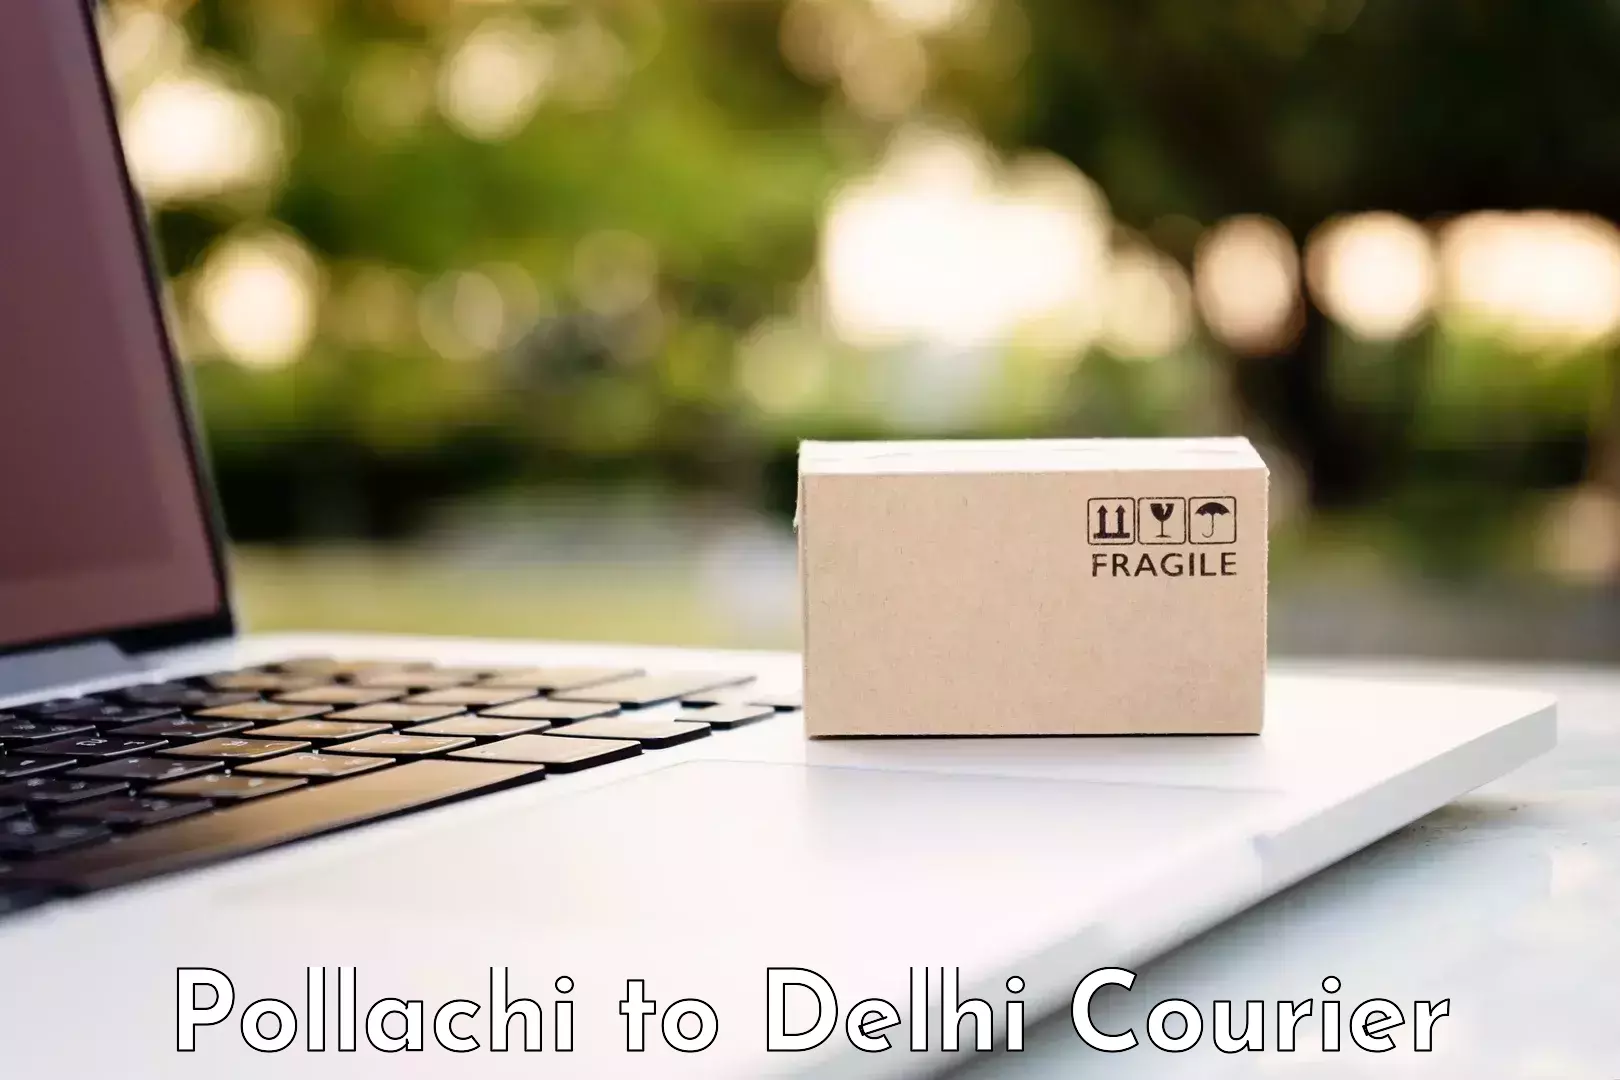 Professional movers Pollachi to Jamia Millia Islamia New Delhi